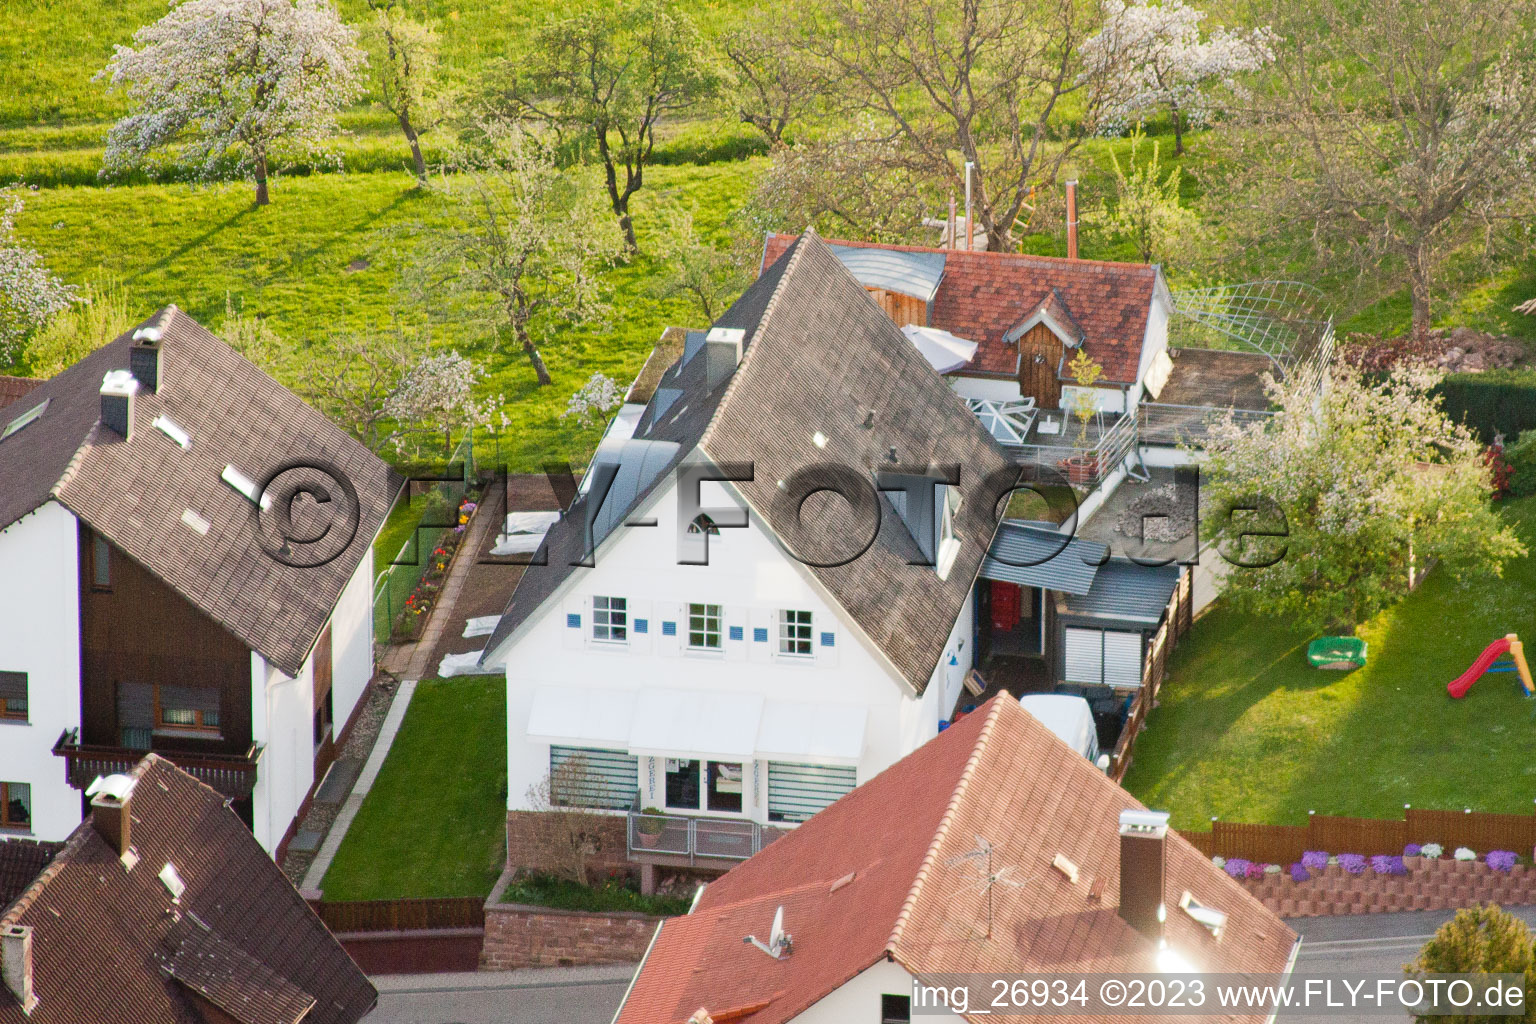 Ortsteil Völkersbach in Malsch im Bundesland Baden-Württemberg, Deutschland aus der Luft betrachtet